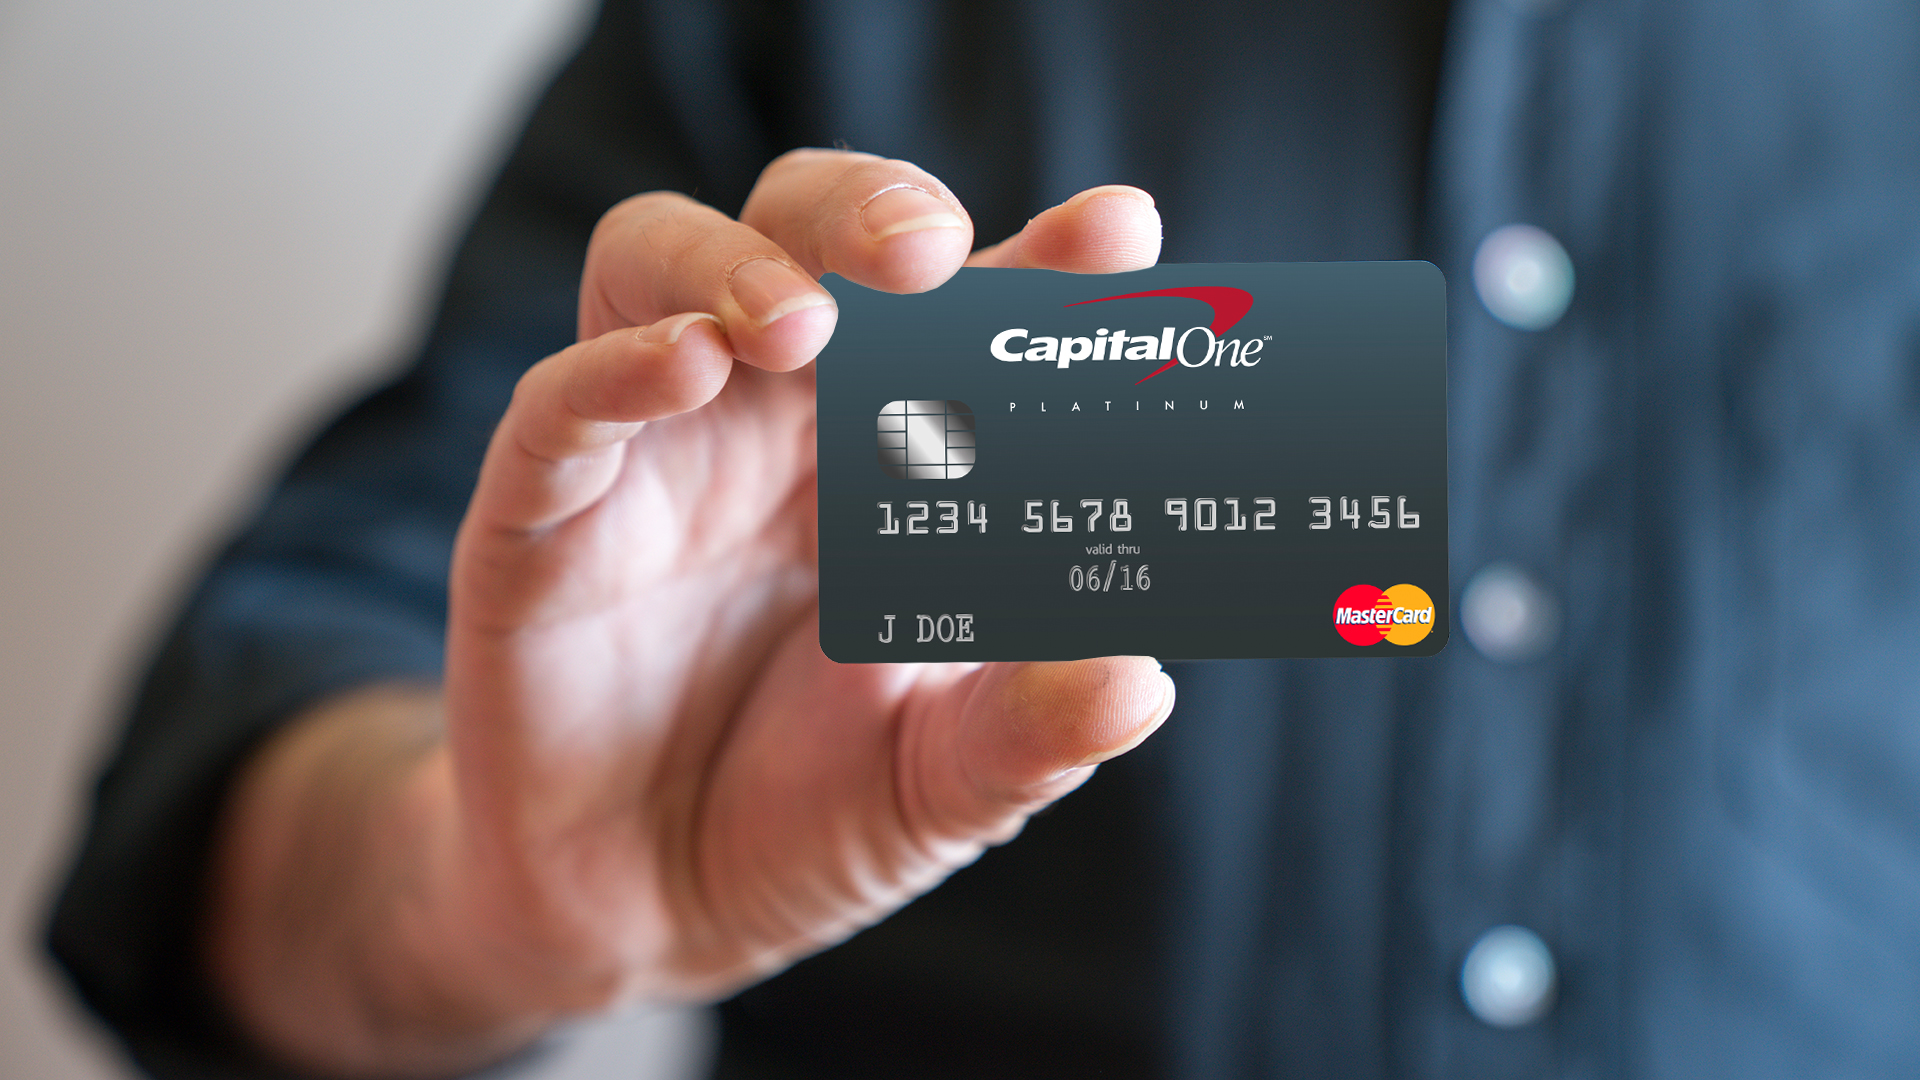 capital one platinum visa credit card review